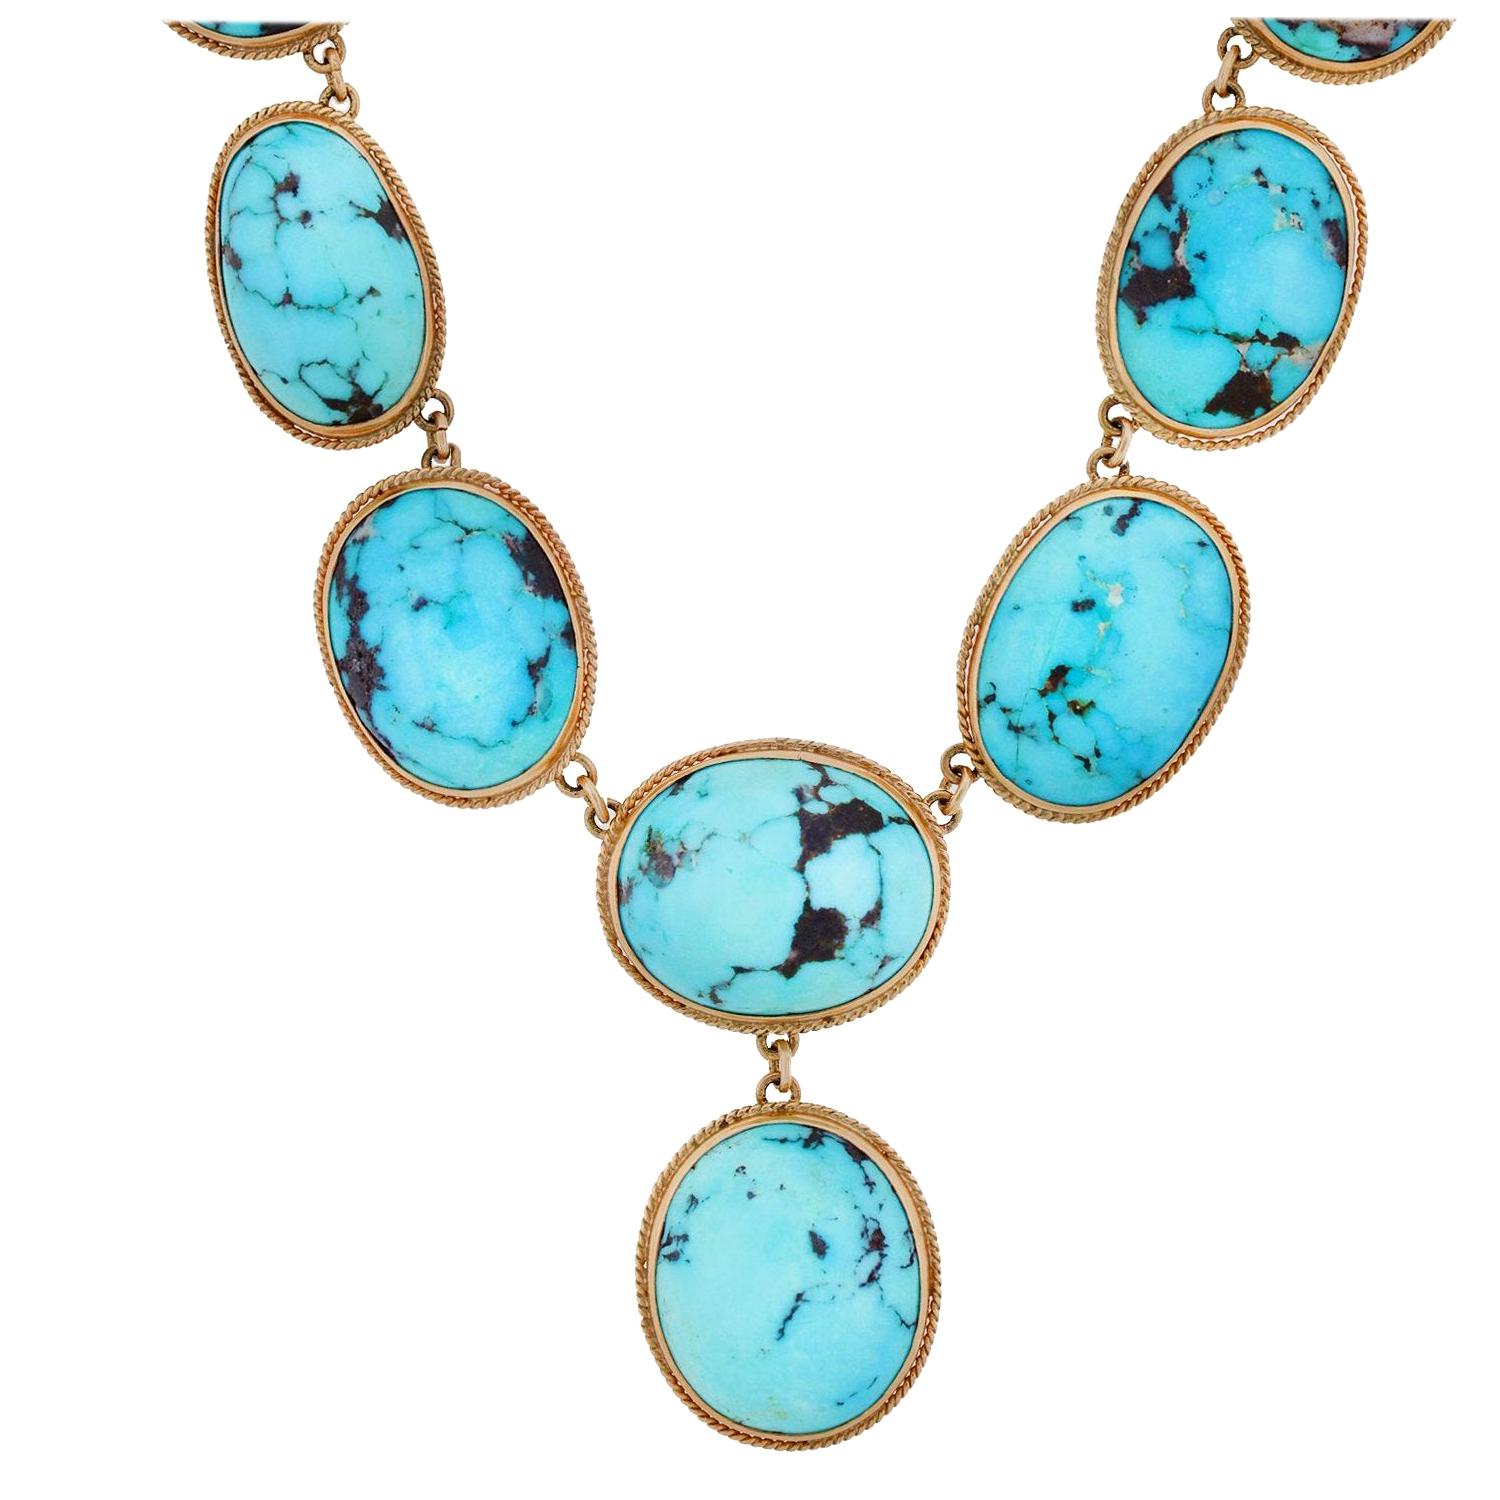 Edwardian Natural Turquoise Festoon Style Necklace